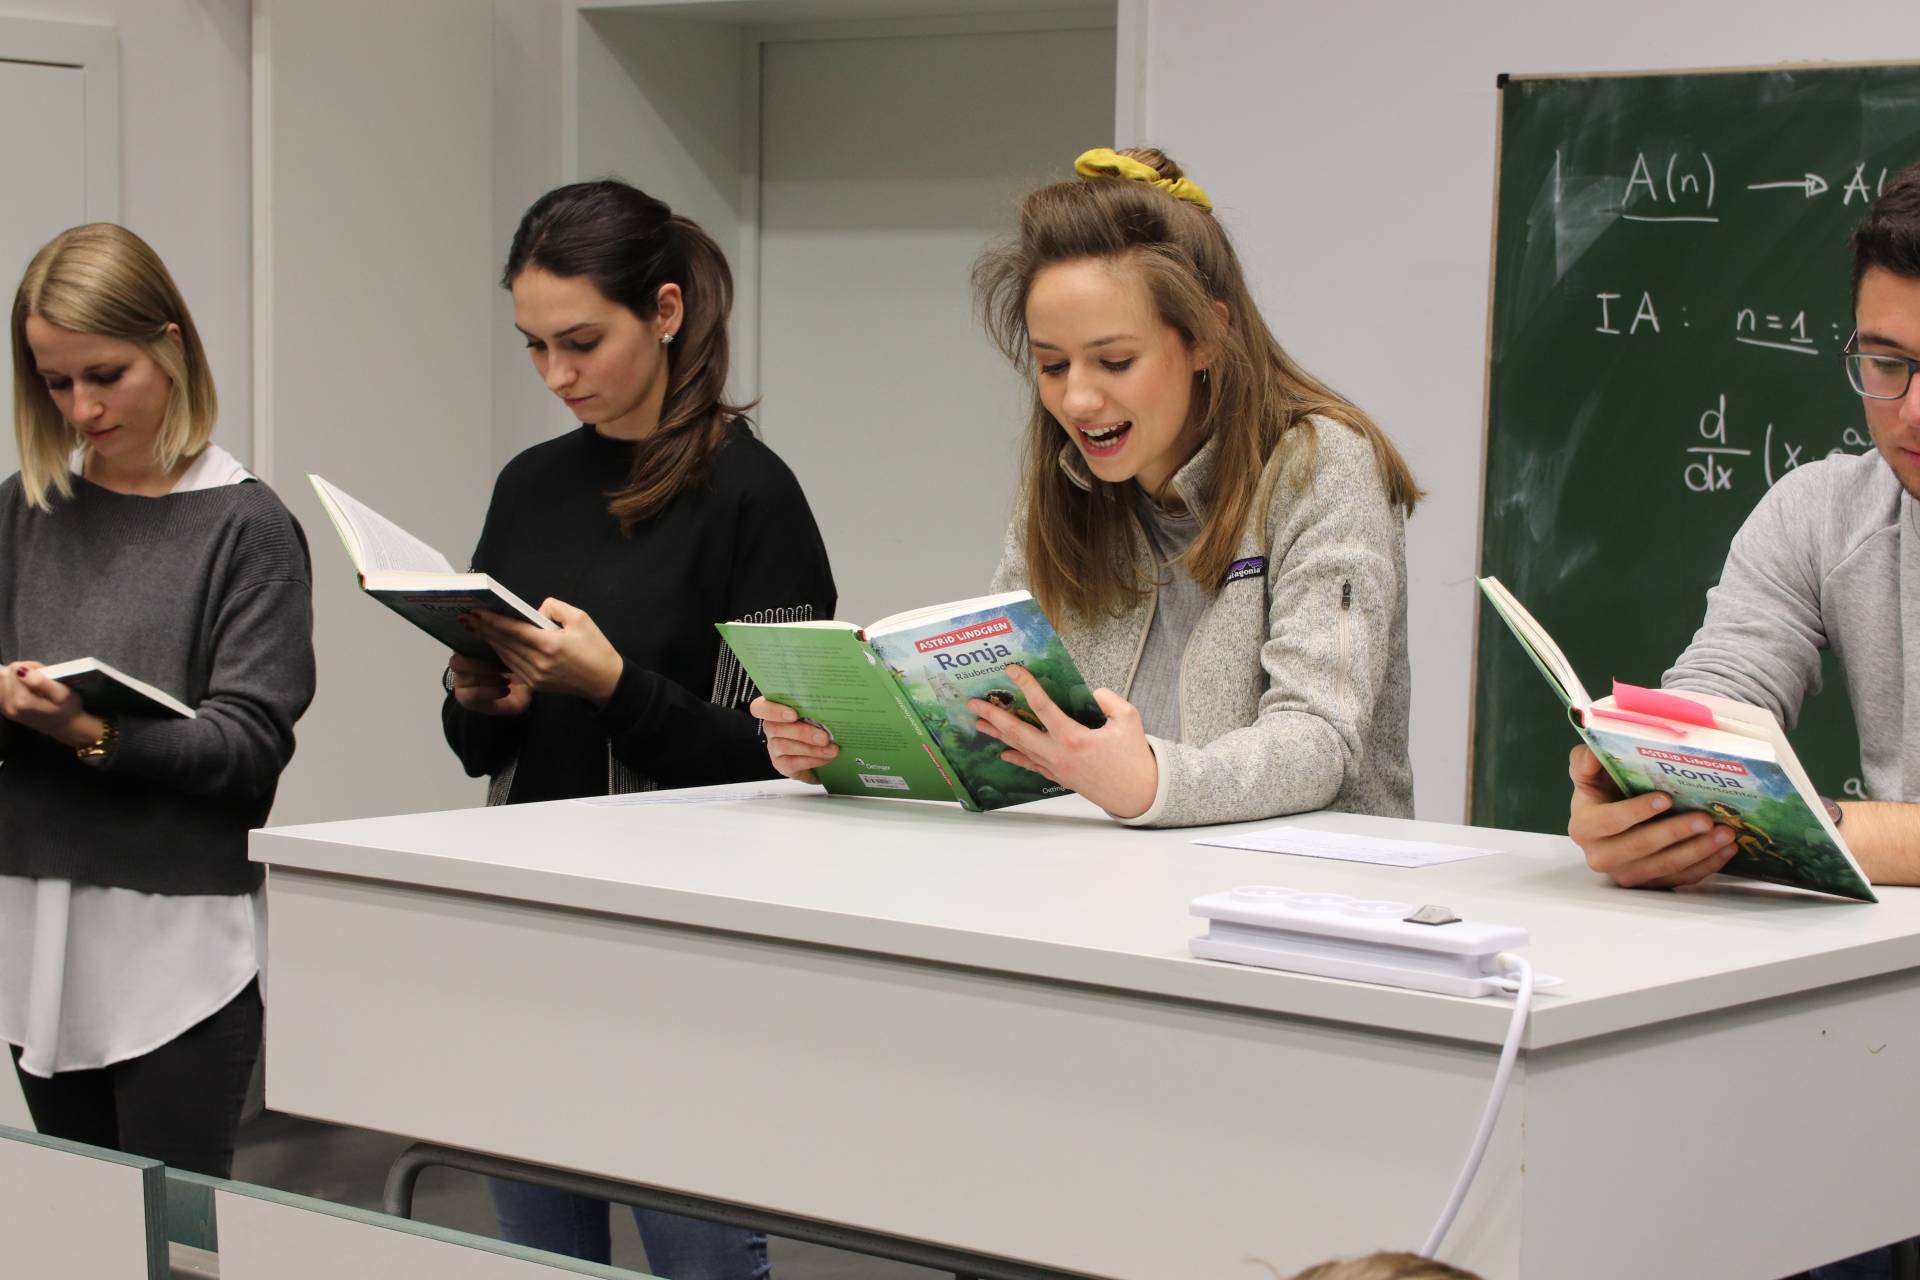 In verteilten Rollen lasen die Studierenden den 4. Klässlern aus Ronja Räubertochter vor.